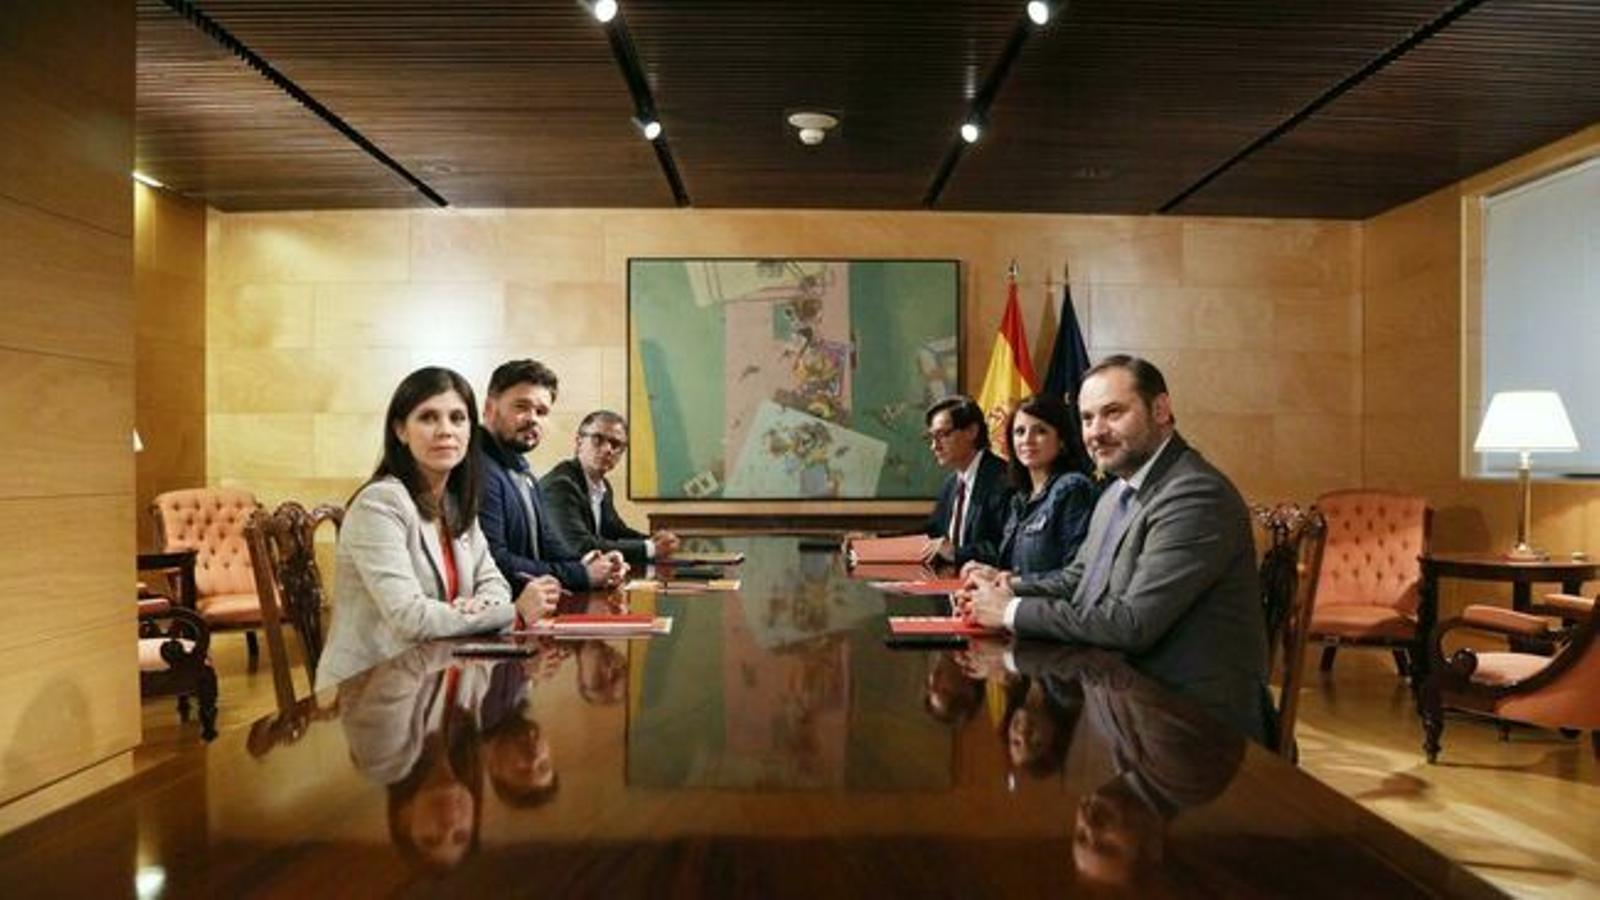 https://www.ara.cat/2019/11/29/imatges/negociadors-ERC-PSOE-reunits-Congres235237499067735540651x366_2352974799_67755894_117x66.jpg